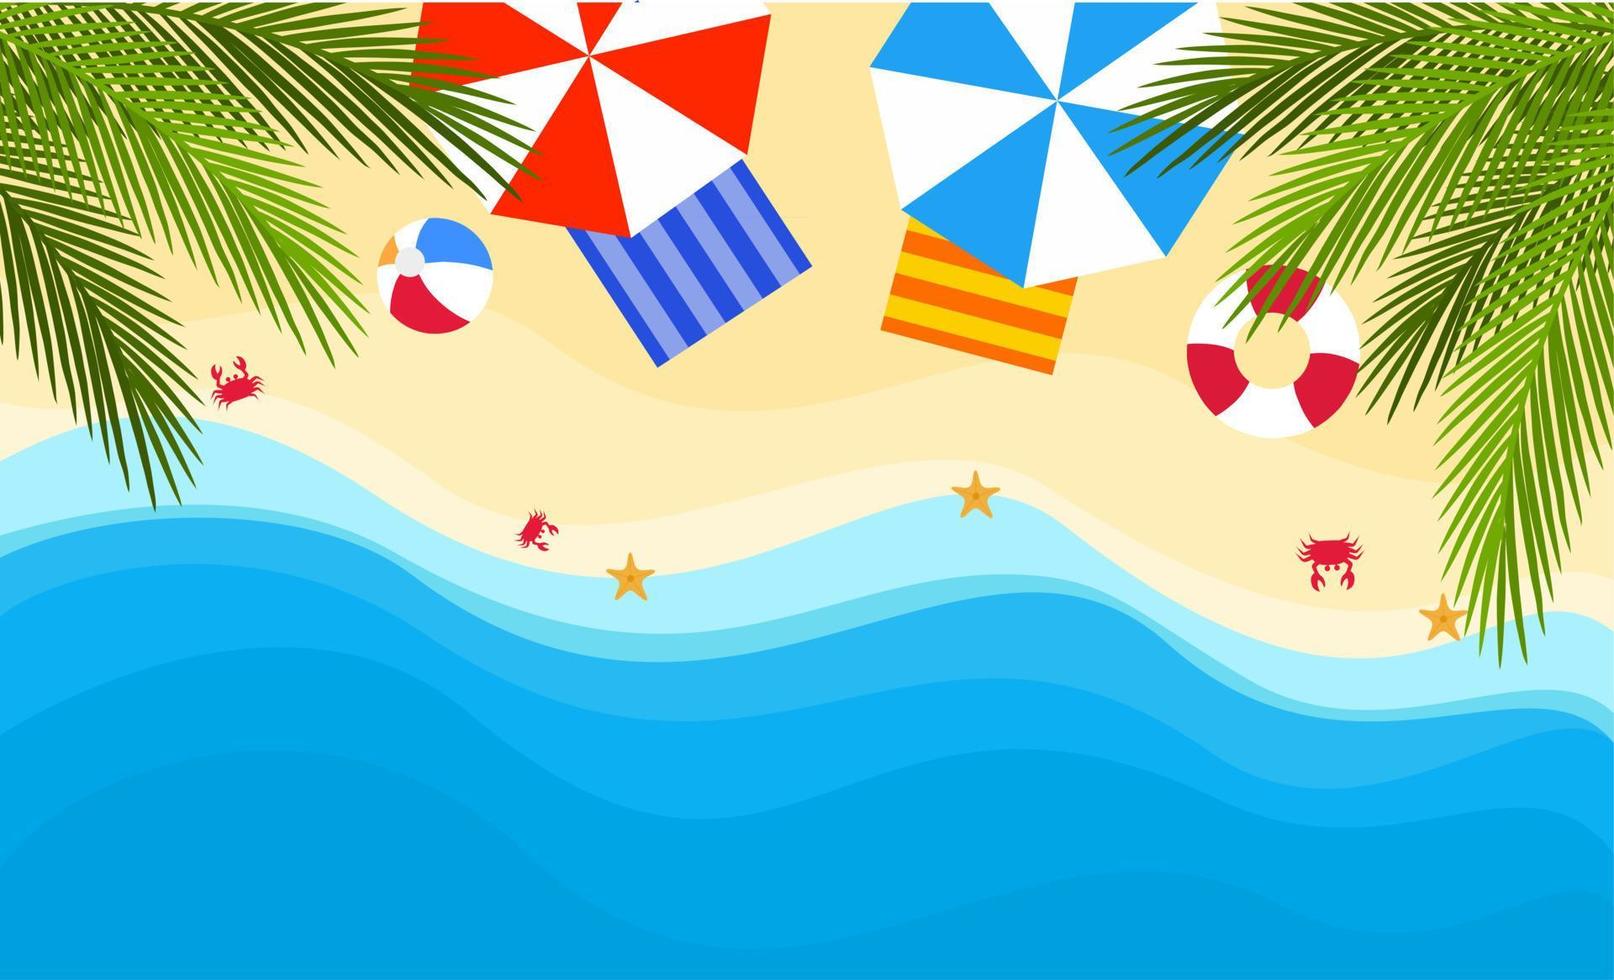 design plano de fundo de verão com vista para a praia. cartaz de férias de verão. ilustração vetorial de praia tropical com guarda-chuva, anel de natação, bola, folha de palmeira, estrela do mar, caranguejo e mar vetor